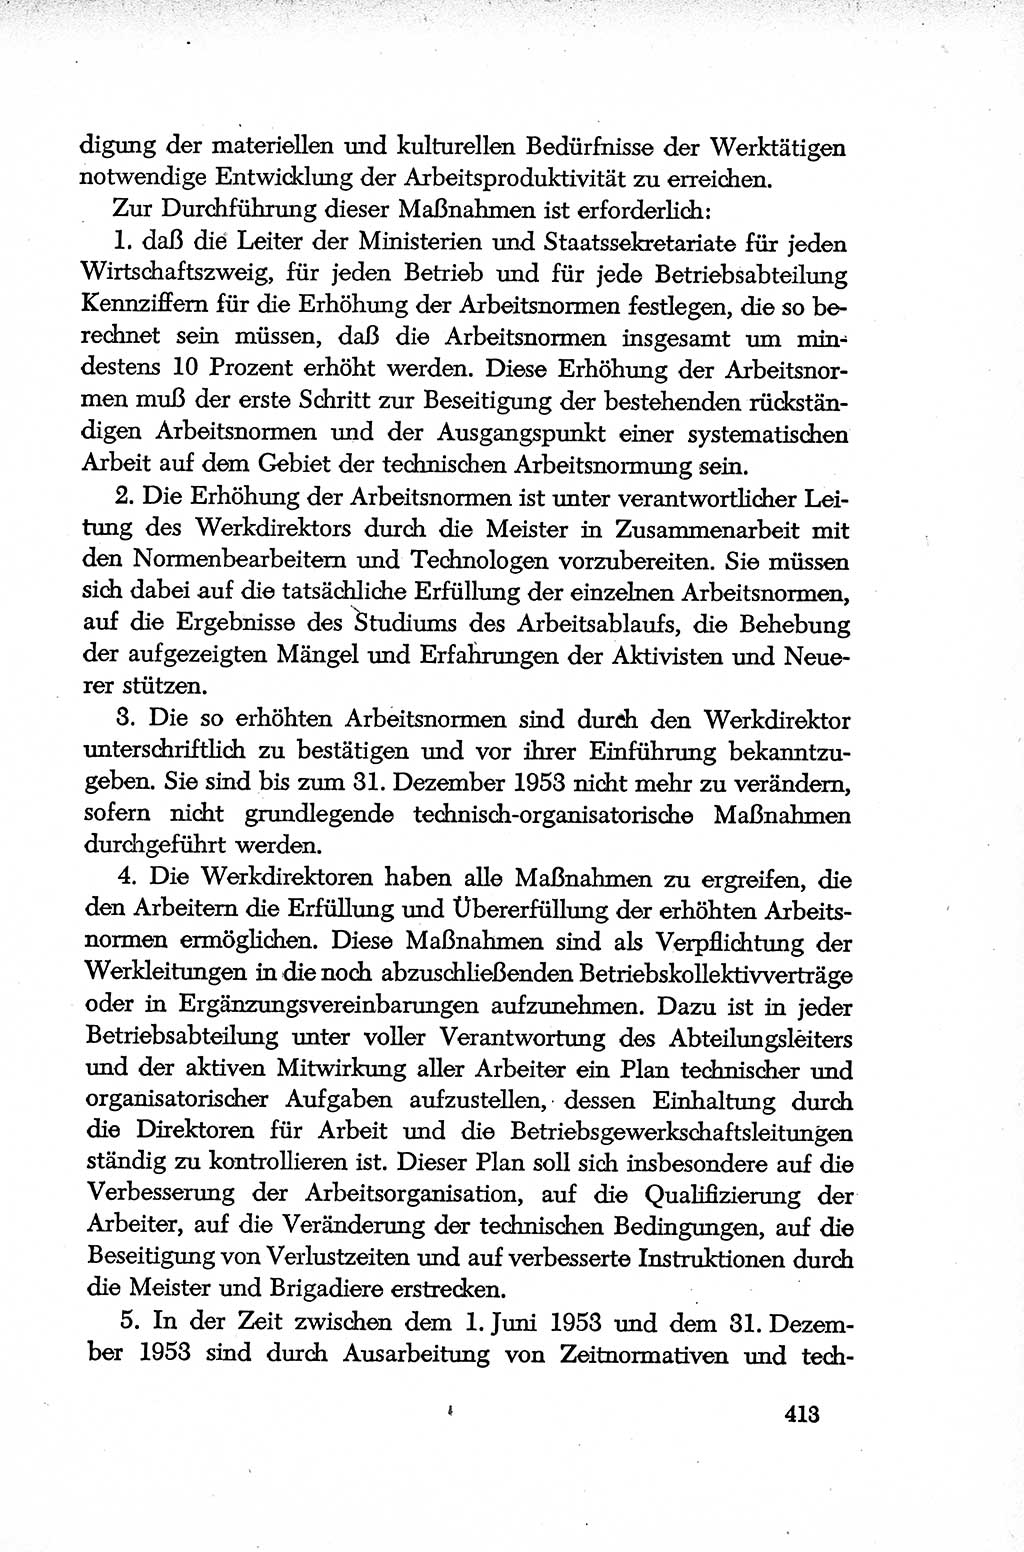 Dokumente der Sozialistischen Einheitspartei Deutschlands (SED) [Deutsche Demokratische Republik (DDR)] 1952-1953, Seite 413 (Dok. SED DDR 1952-1953, S. 413)